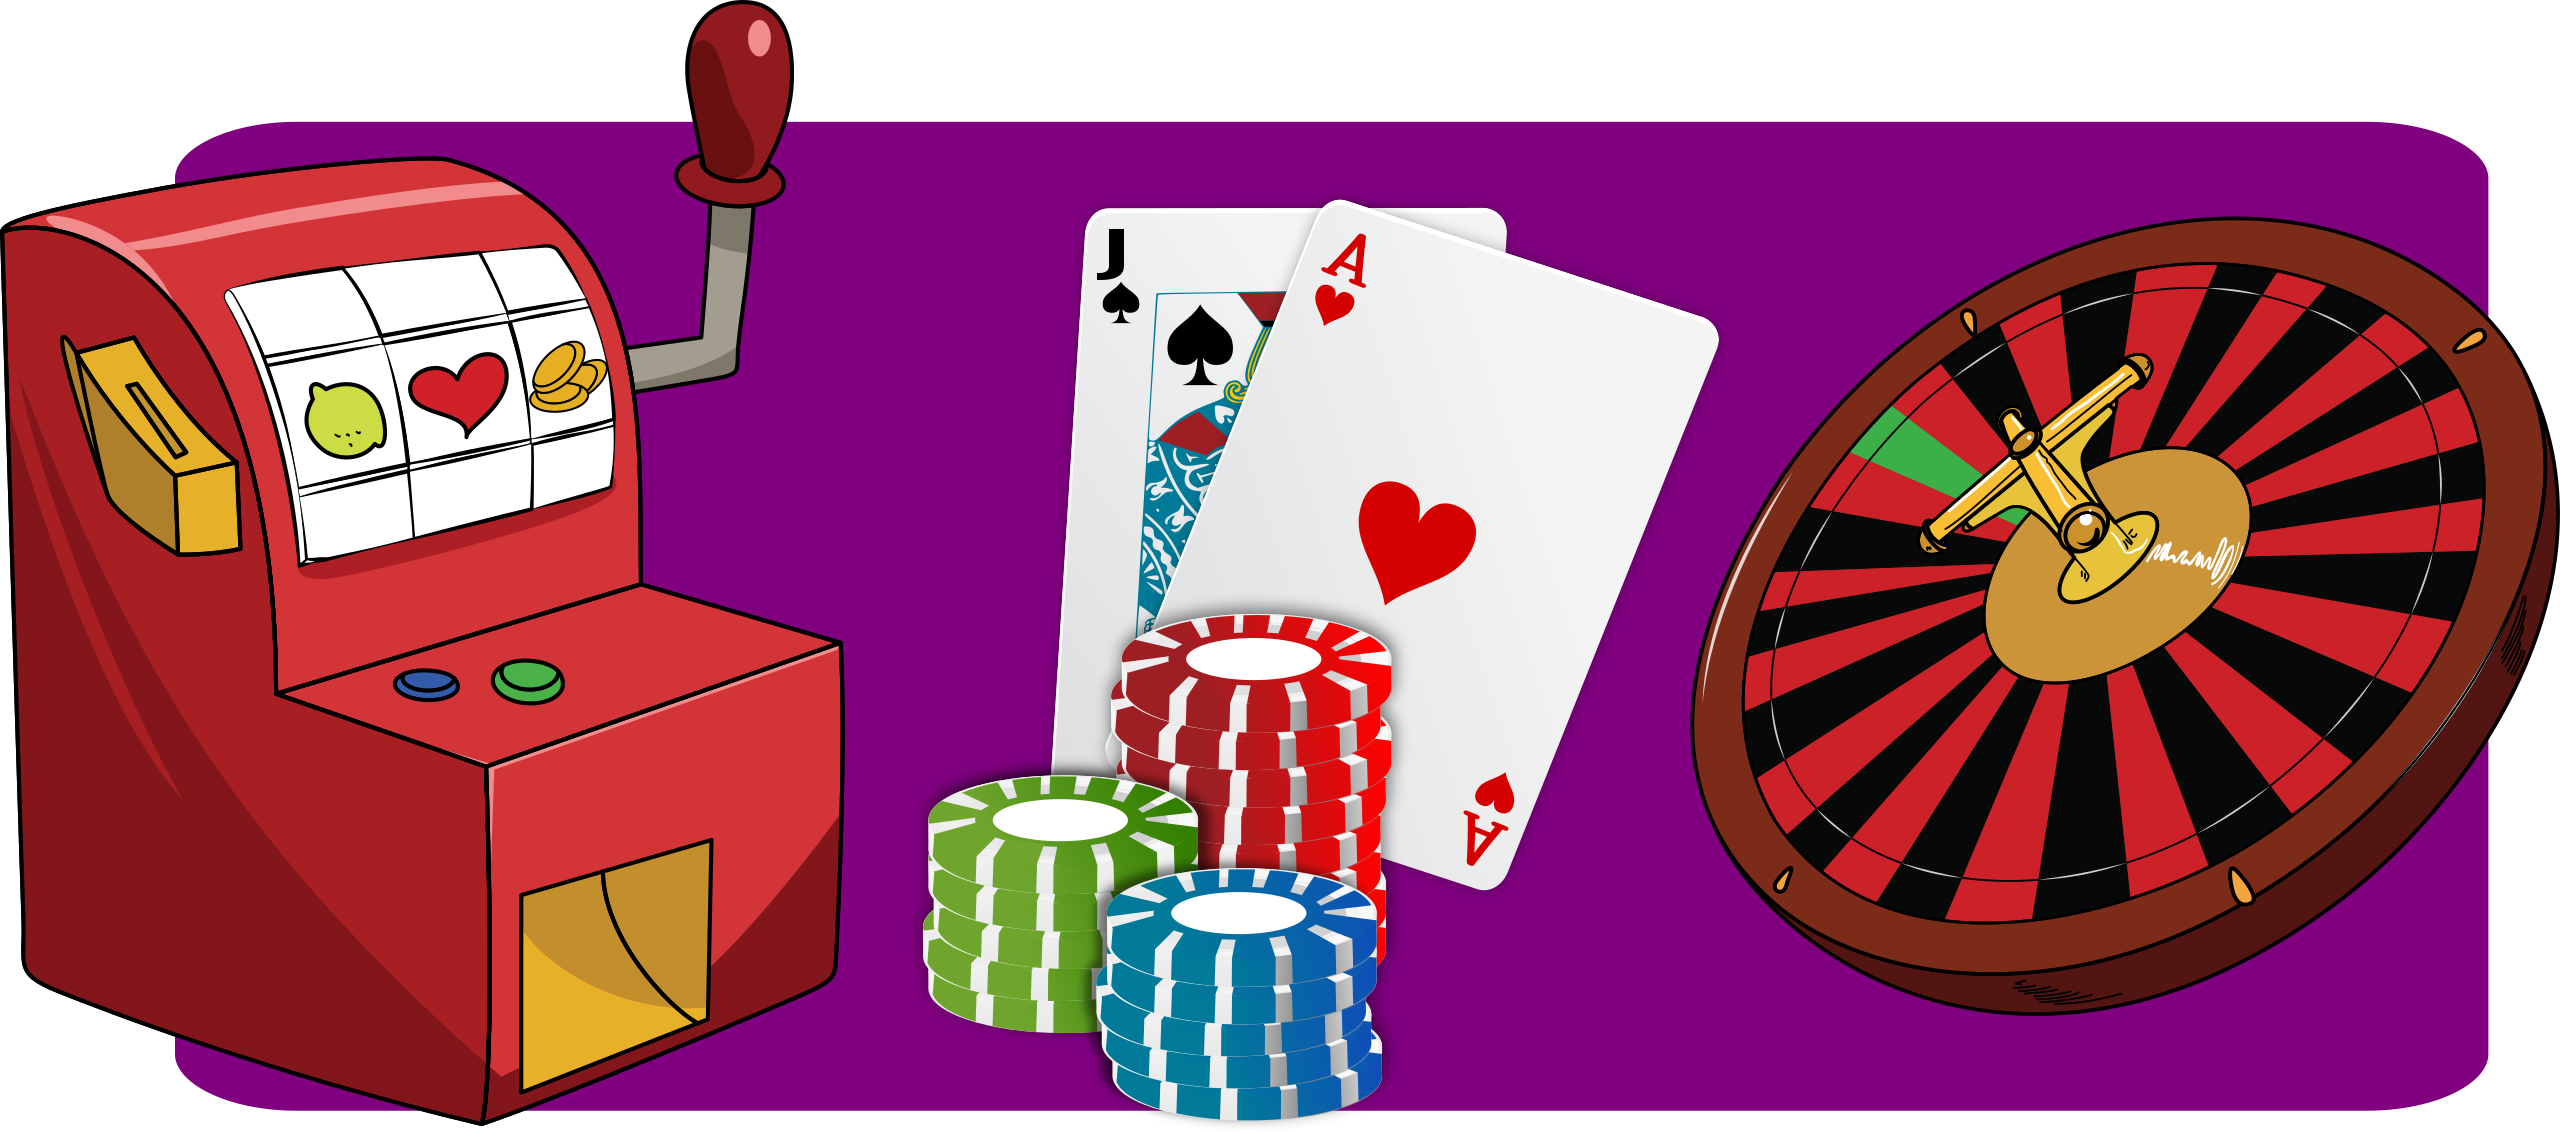 File:Casino-gambling.svg - Wikimedia Commons